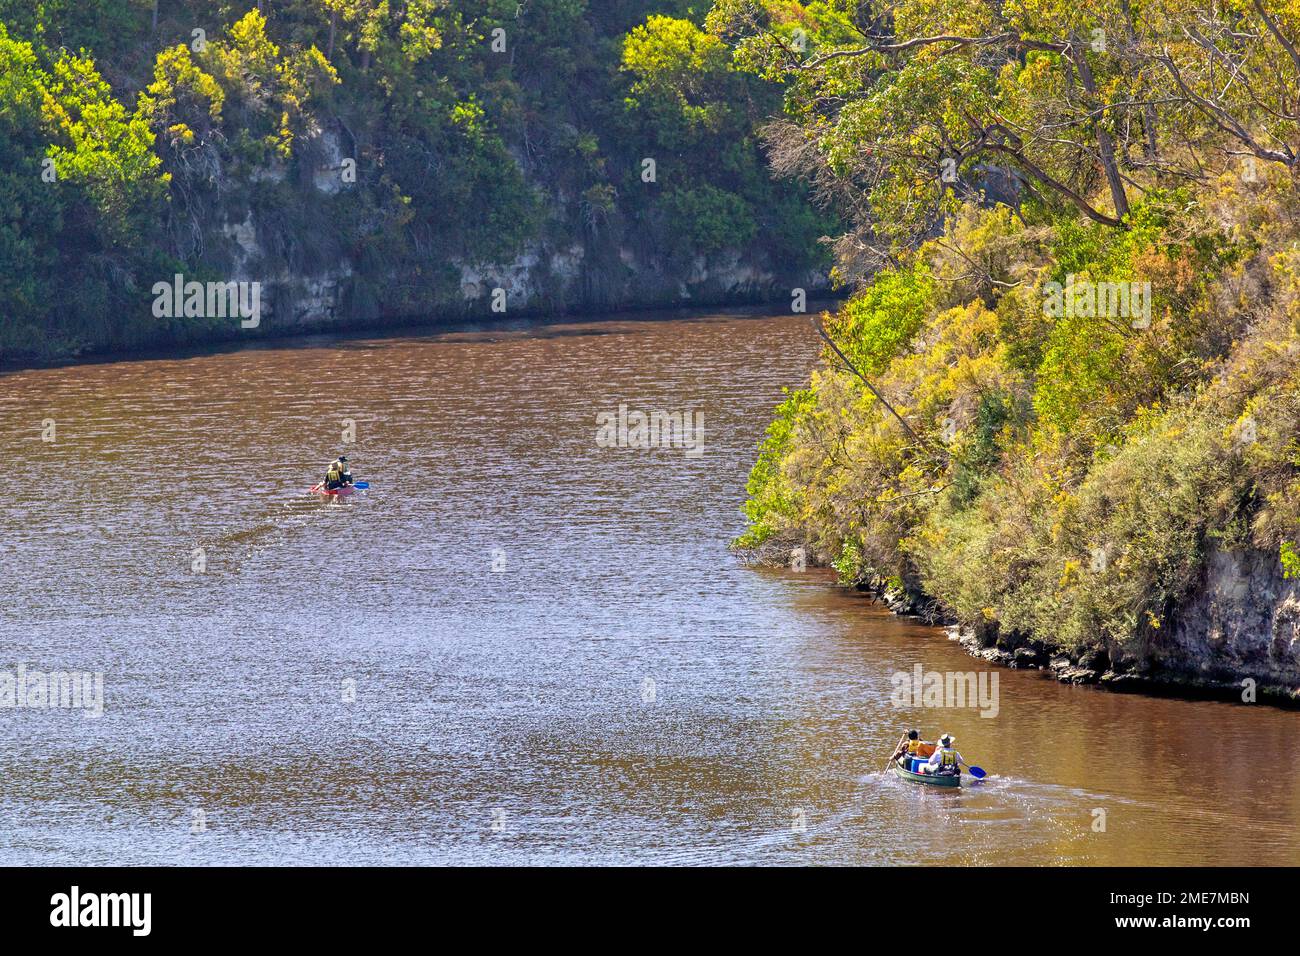 Canoeing on the Glenelg River Stock Photo